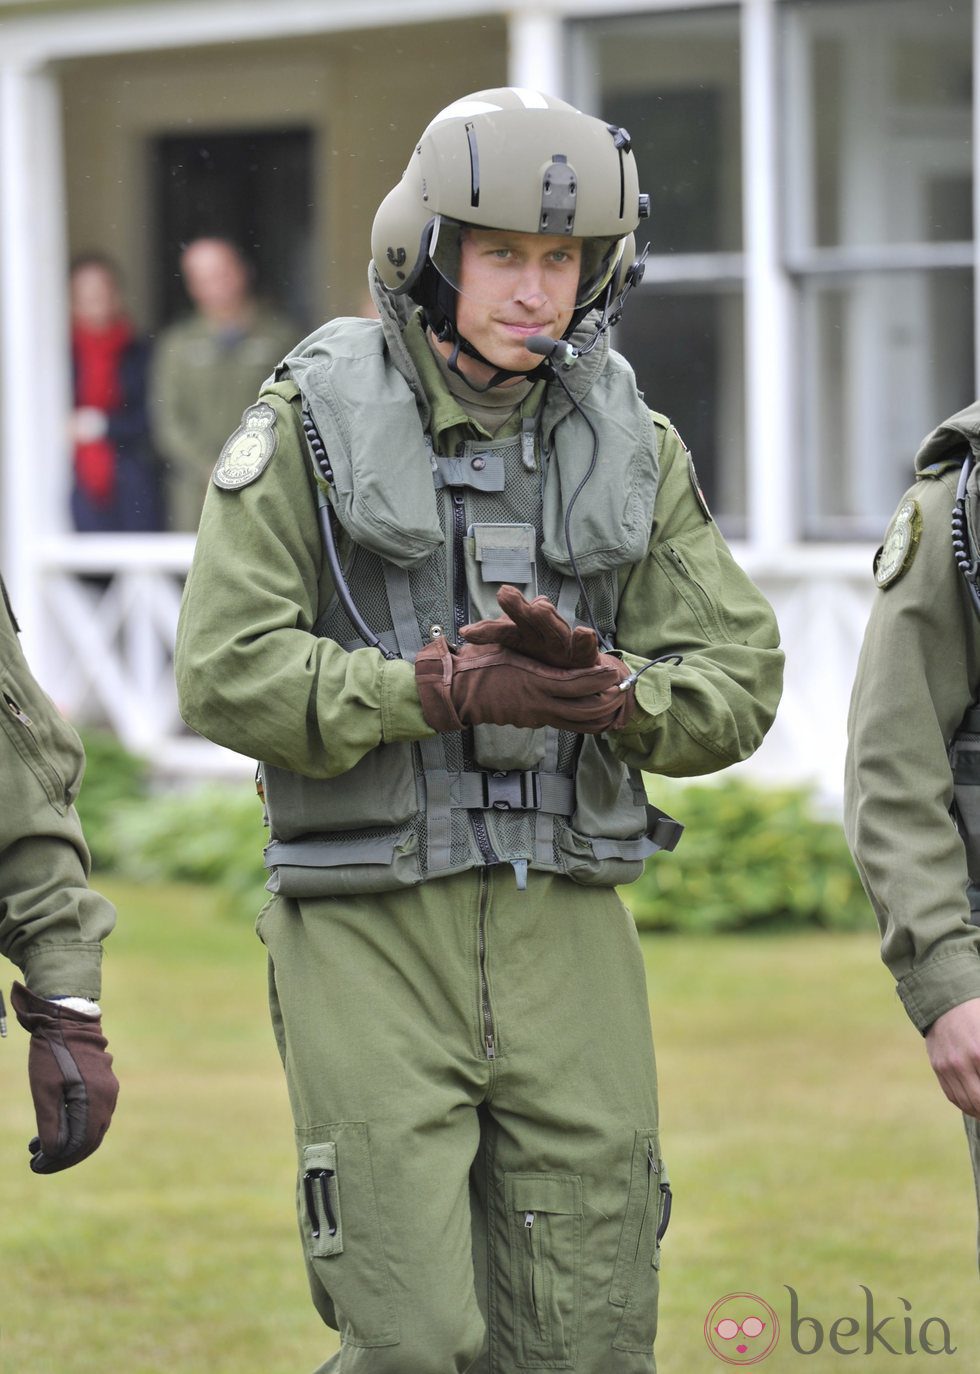 Guillermo de Inglaterra antes de pilotar un helicóptero en Canadá